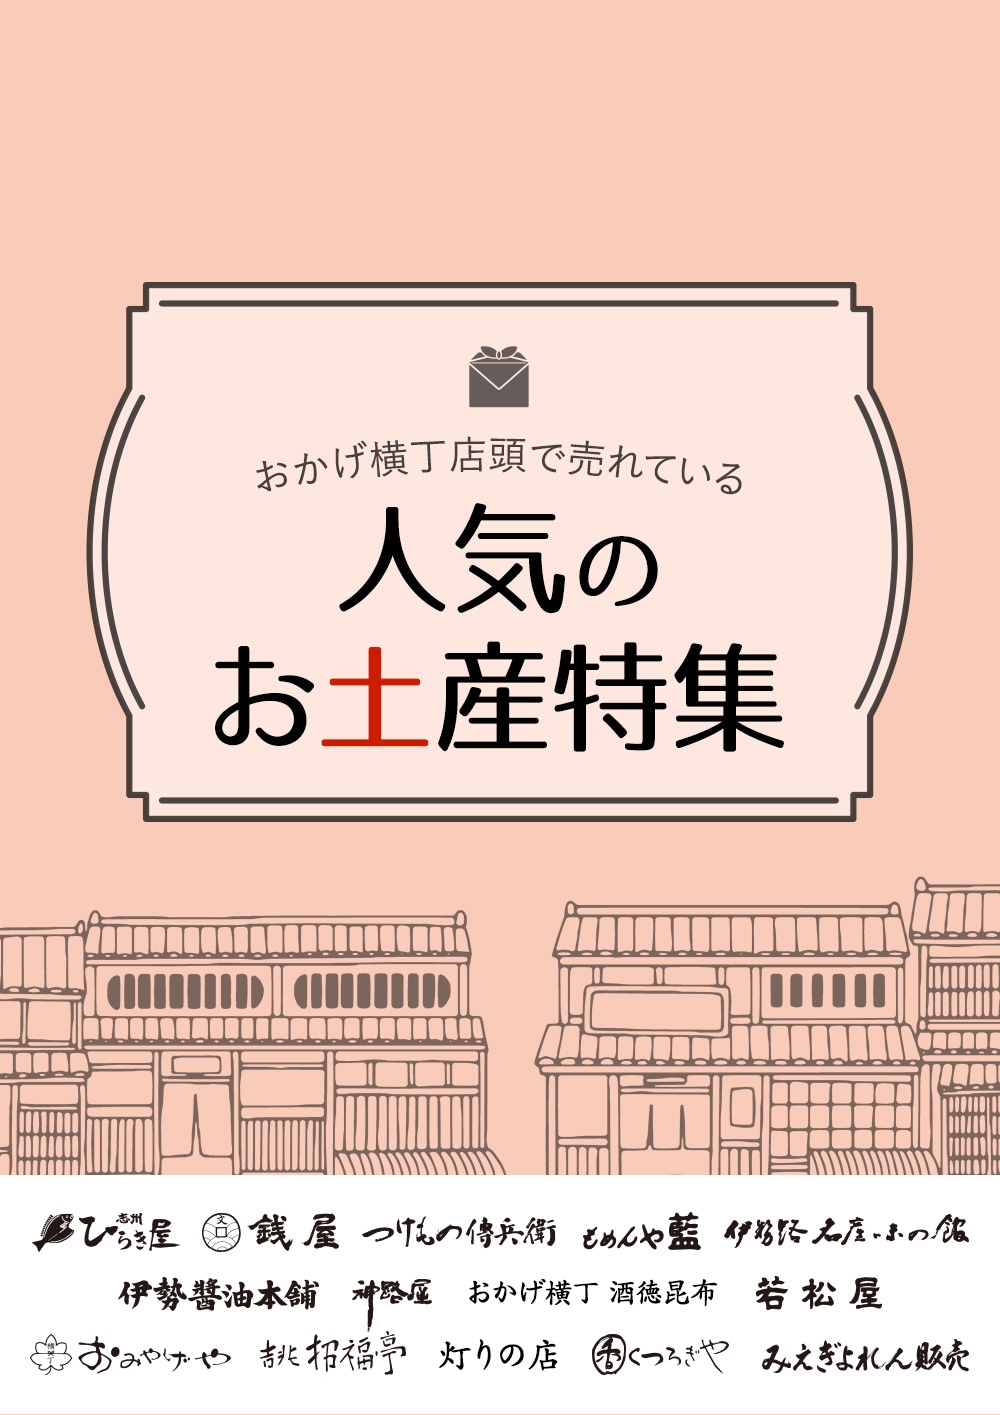 伊勢志摩のお土産ならおかげ横丁公式オンラインショップ